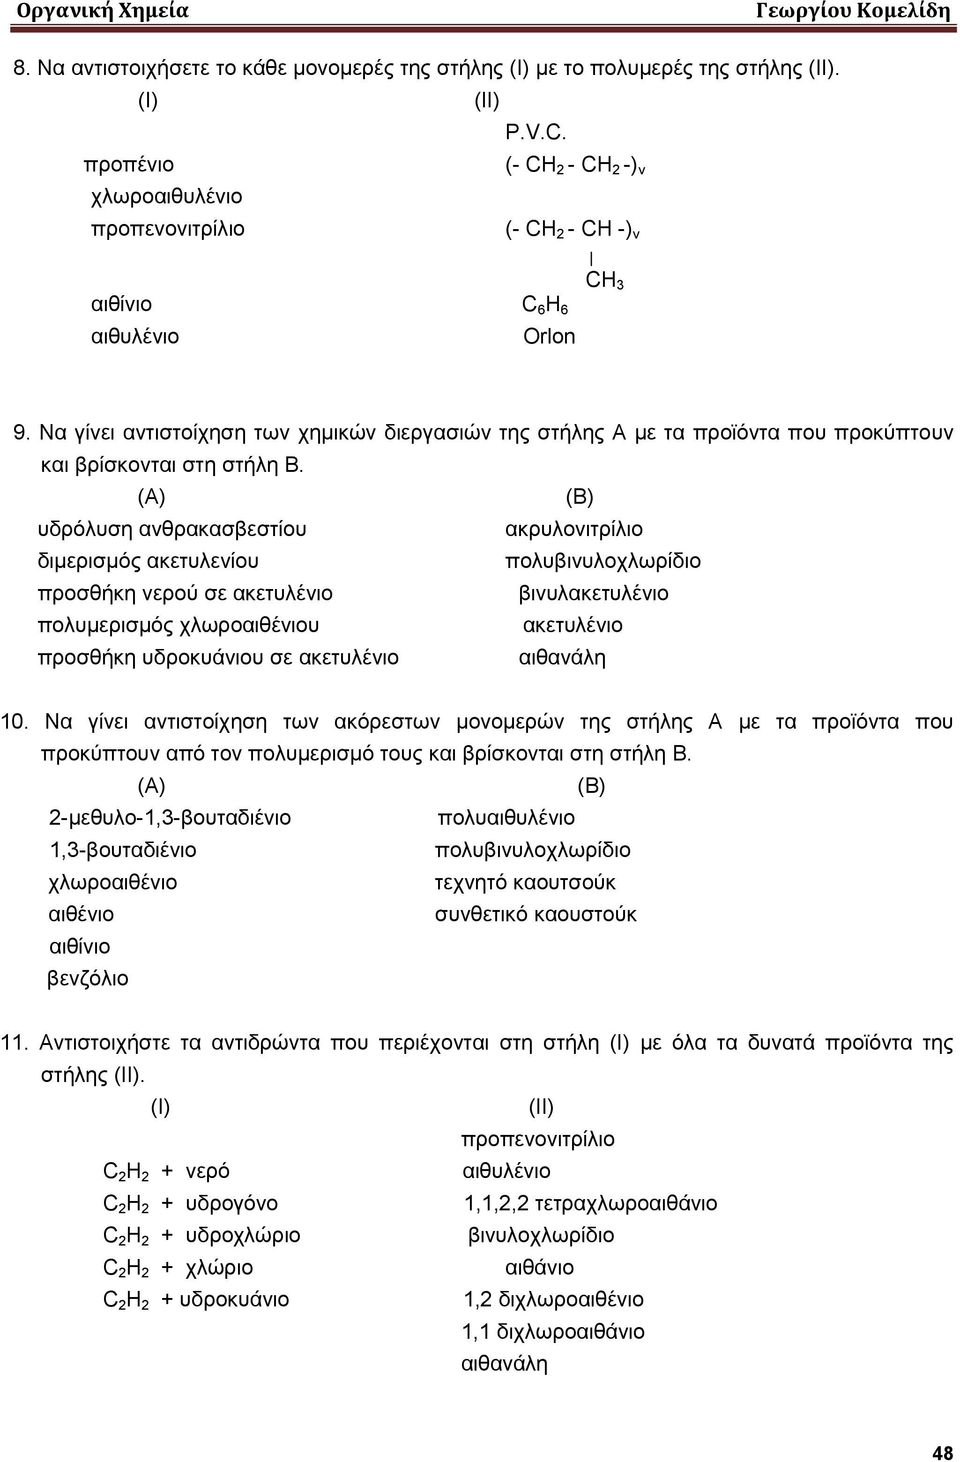 (Α) (Β) υδρόλυση ανθρακασβεστίου ακρυλονιτρίλιο διμερισμός ακετυλενίου πολυβινυλοχλωρίδιο προσθήκη νερού σε ακετυλένιο βινυλακετυλένιο πολυμερισμός χλωροαιθένιου ακετυλένιο προσθήκη υδροκυάνιου σε